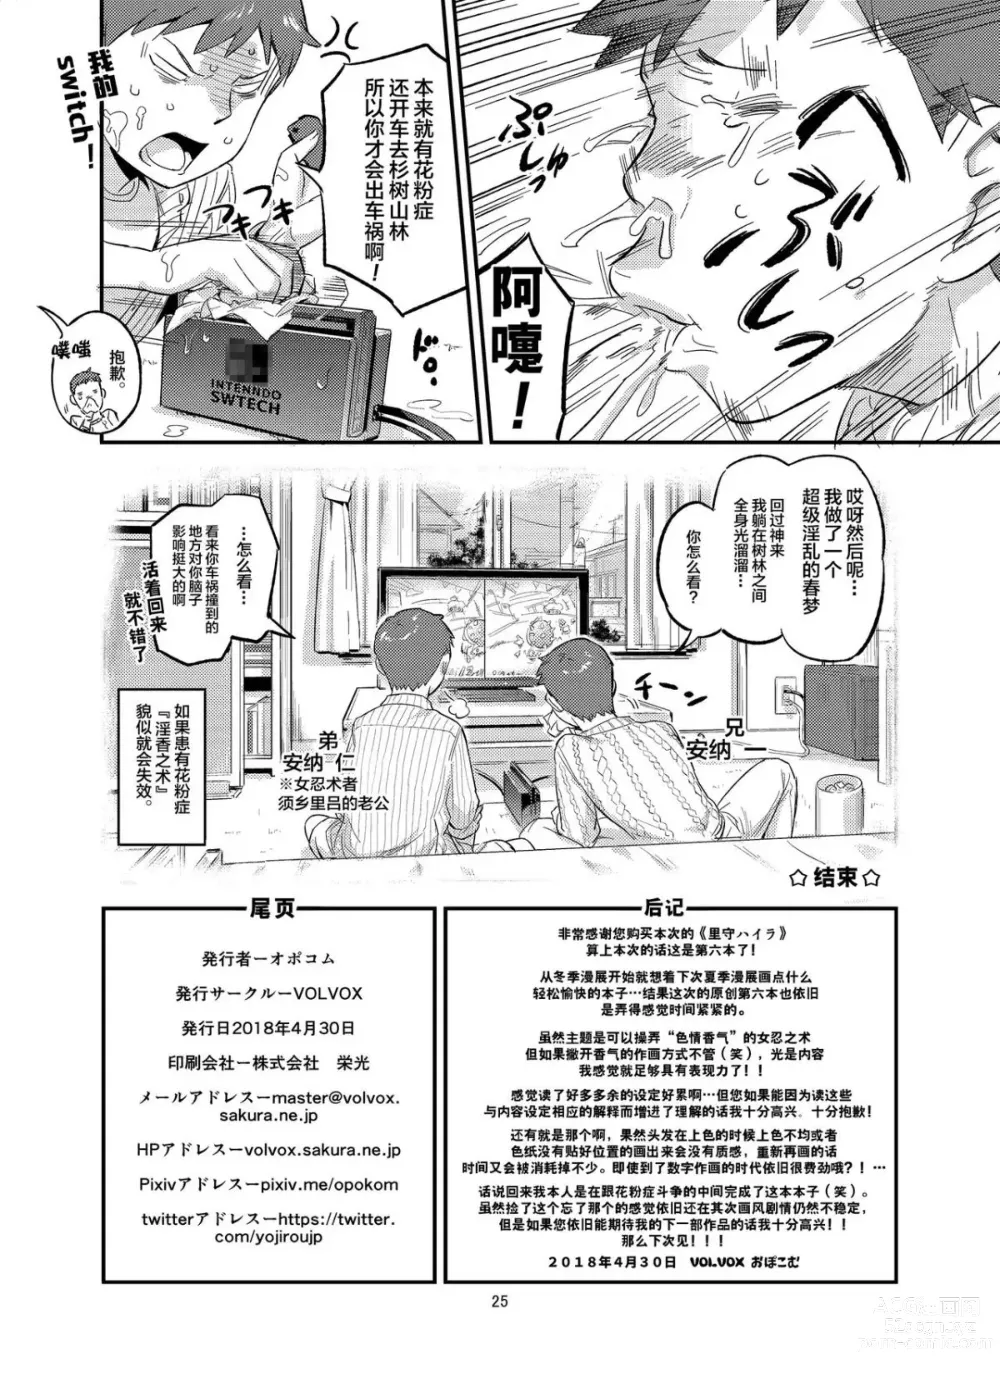 Page 26 of doujinshi Satomori Haira Inpouchou